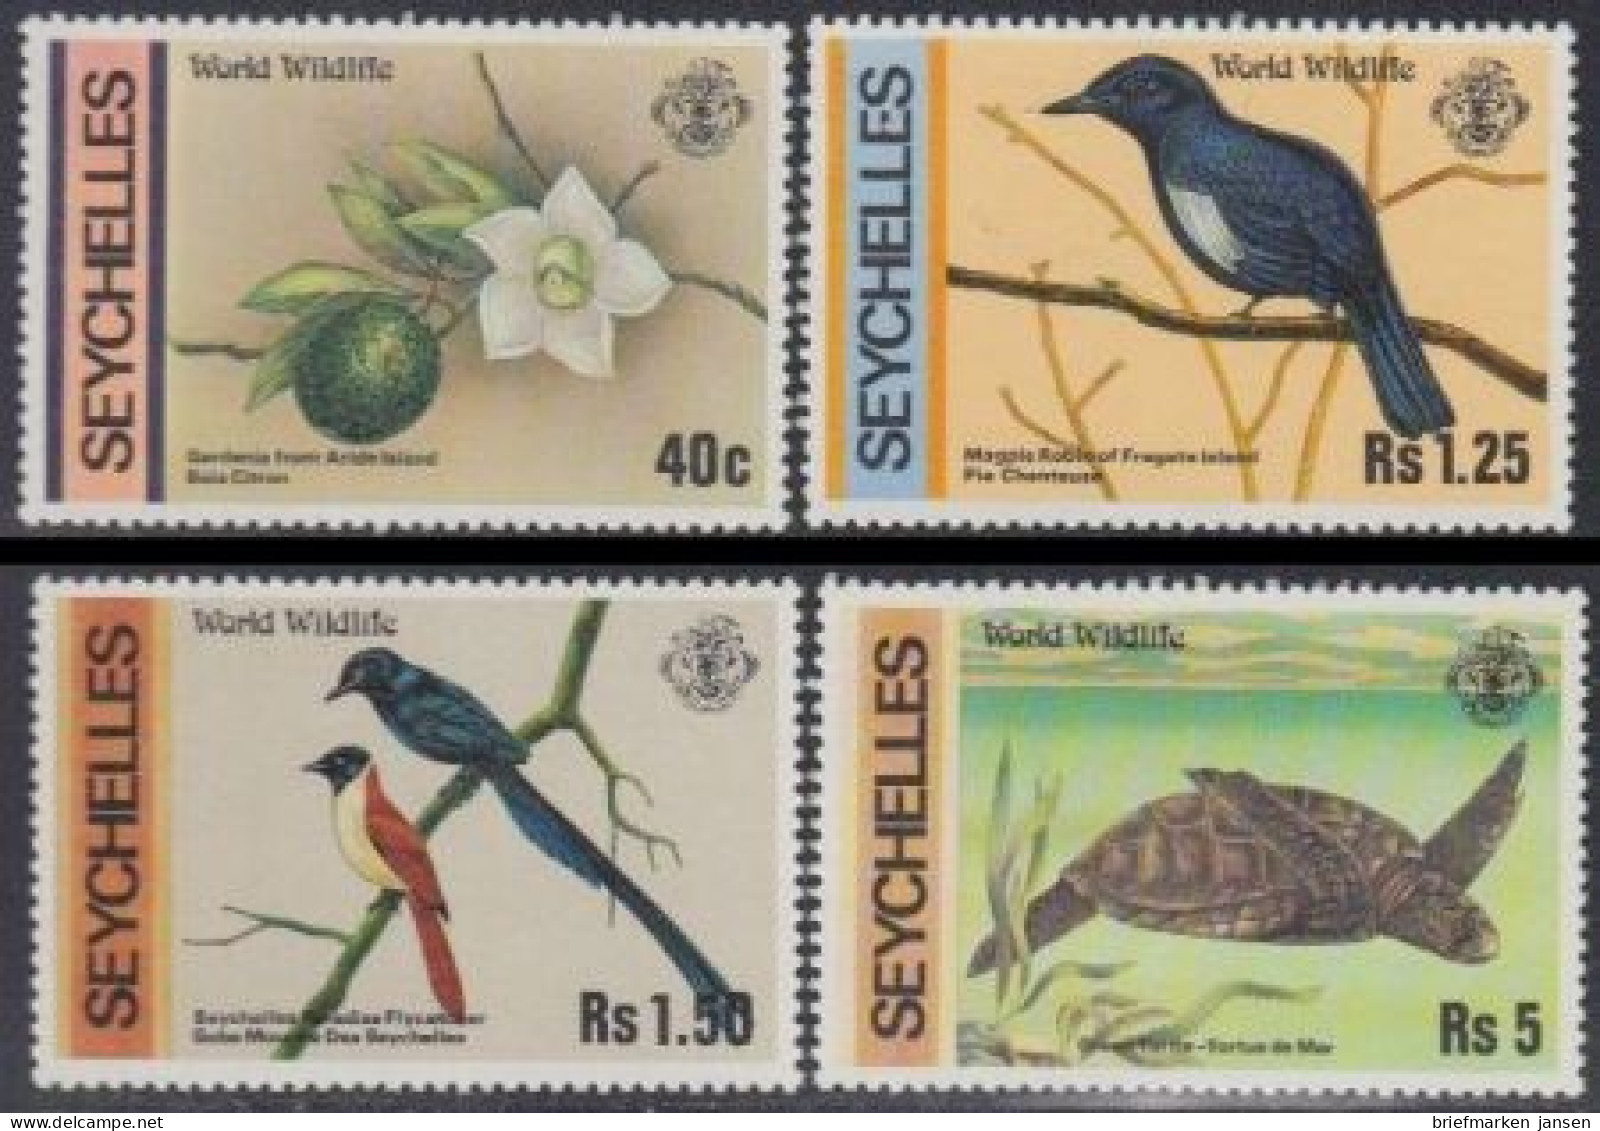 Seychellen Mi.Nr. 422-25 Naturschutz, Gardenie, Vögel, Schildkröte (4 Werte) - Seychellen (1976-...)